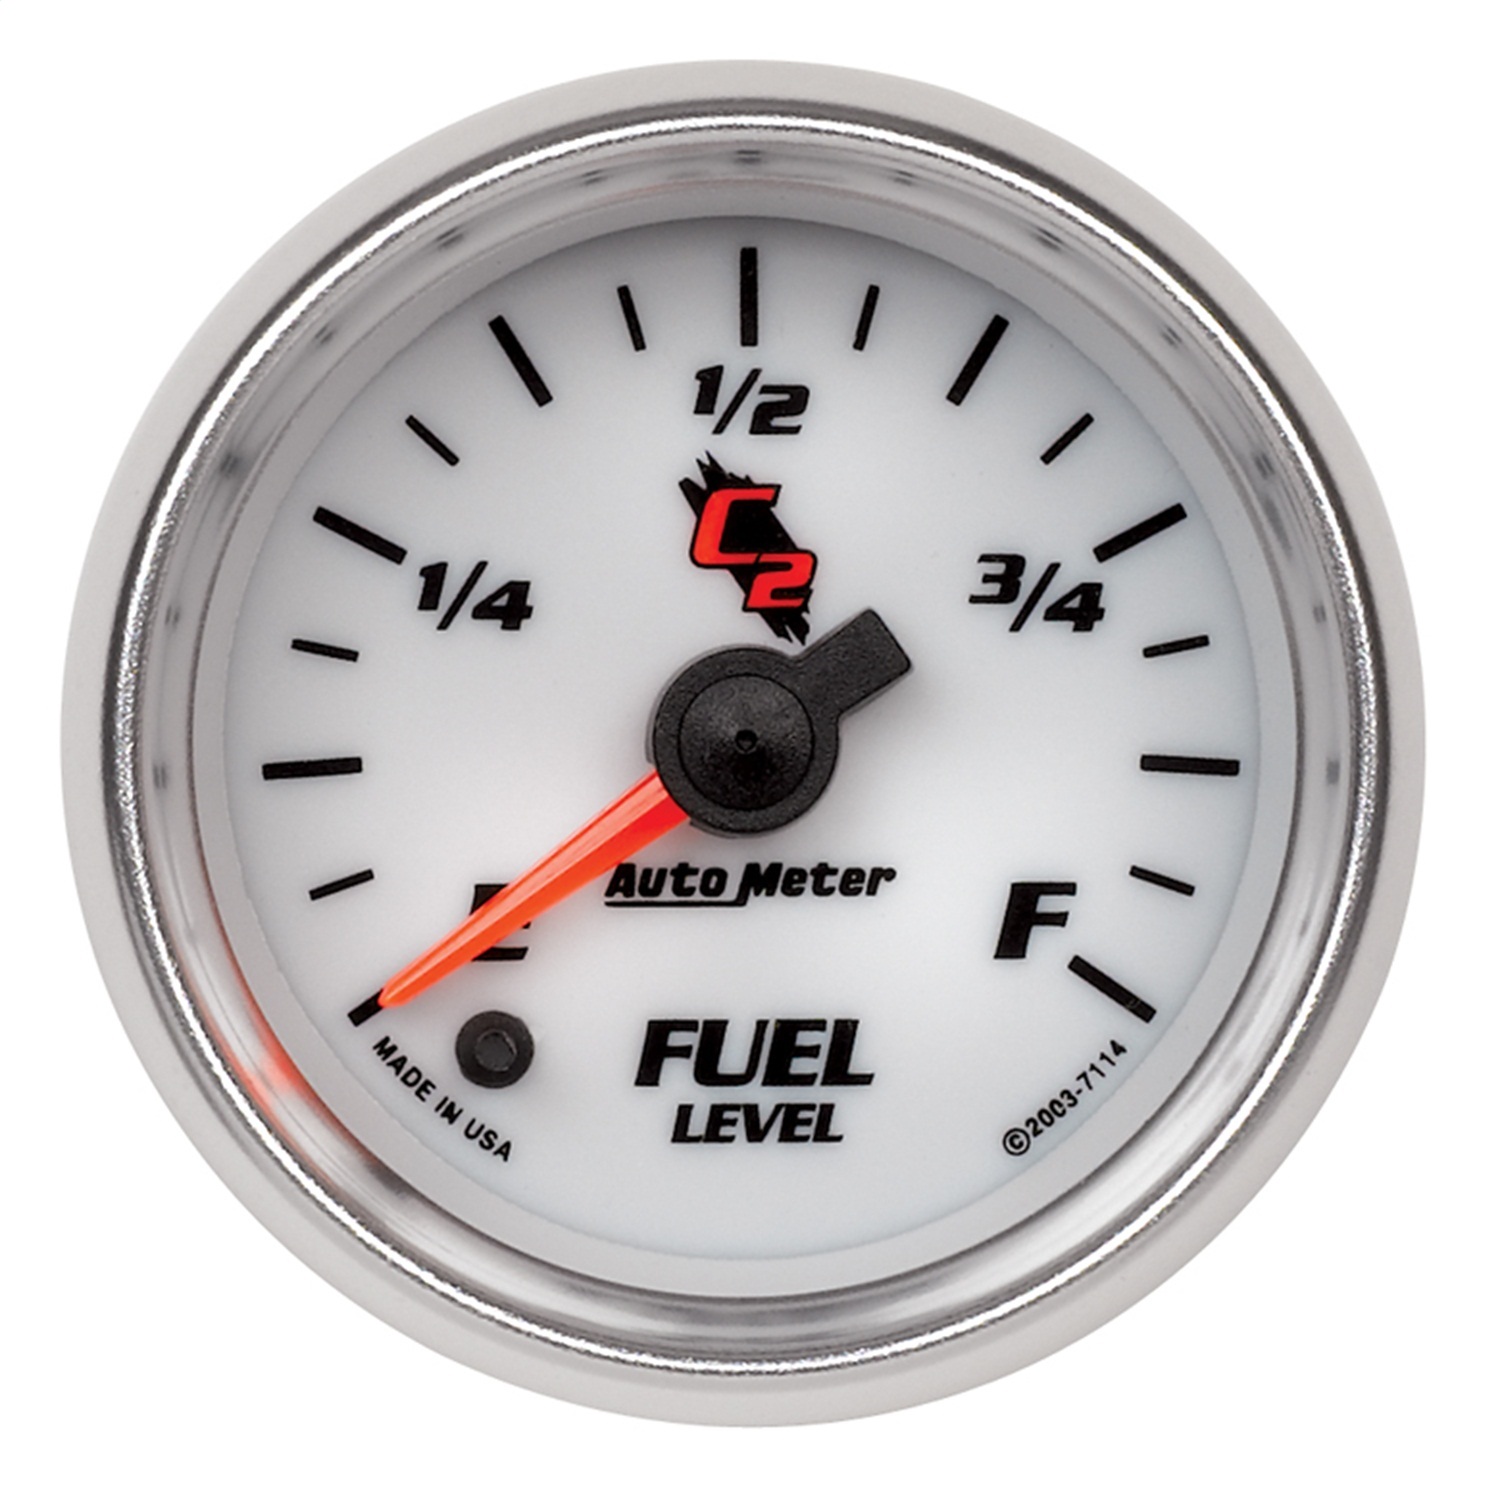 Auto Meter Auto Meter 7114 C2; Electric Programmable Fuel Level Gauge